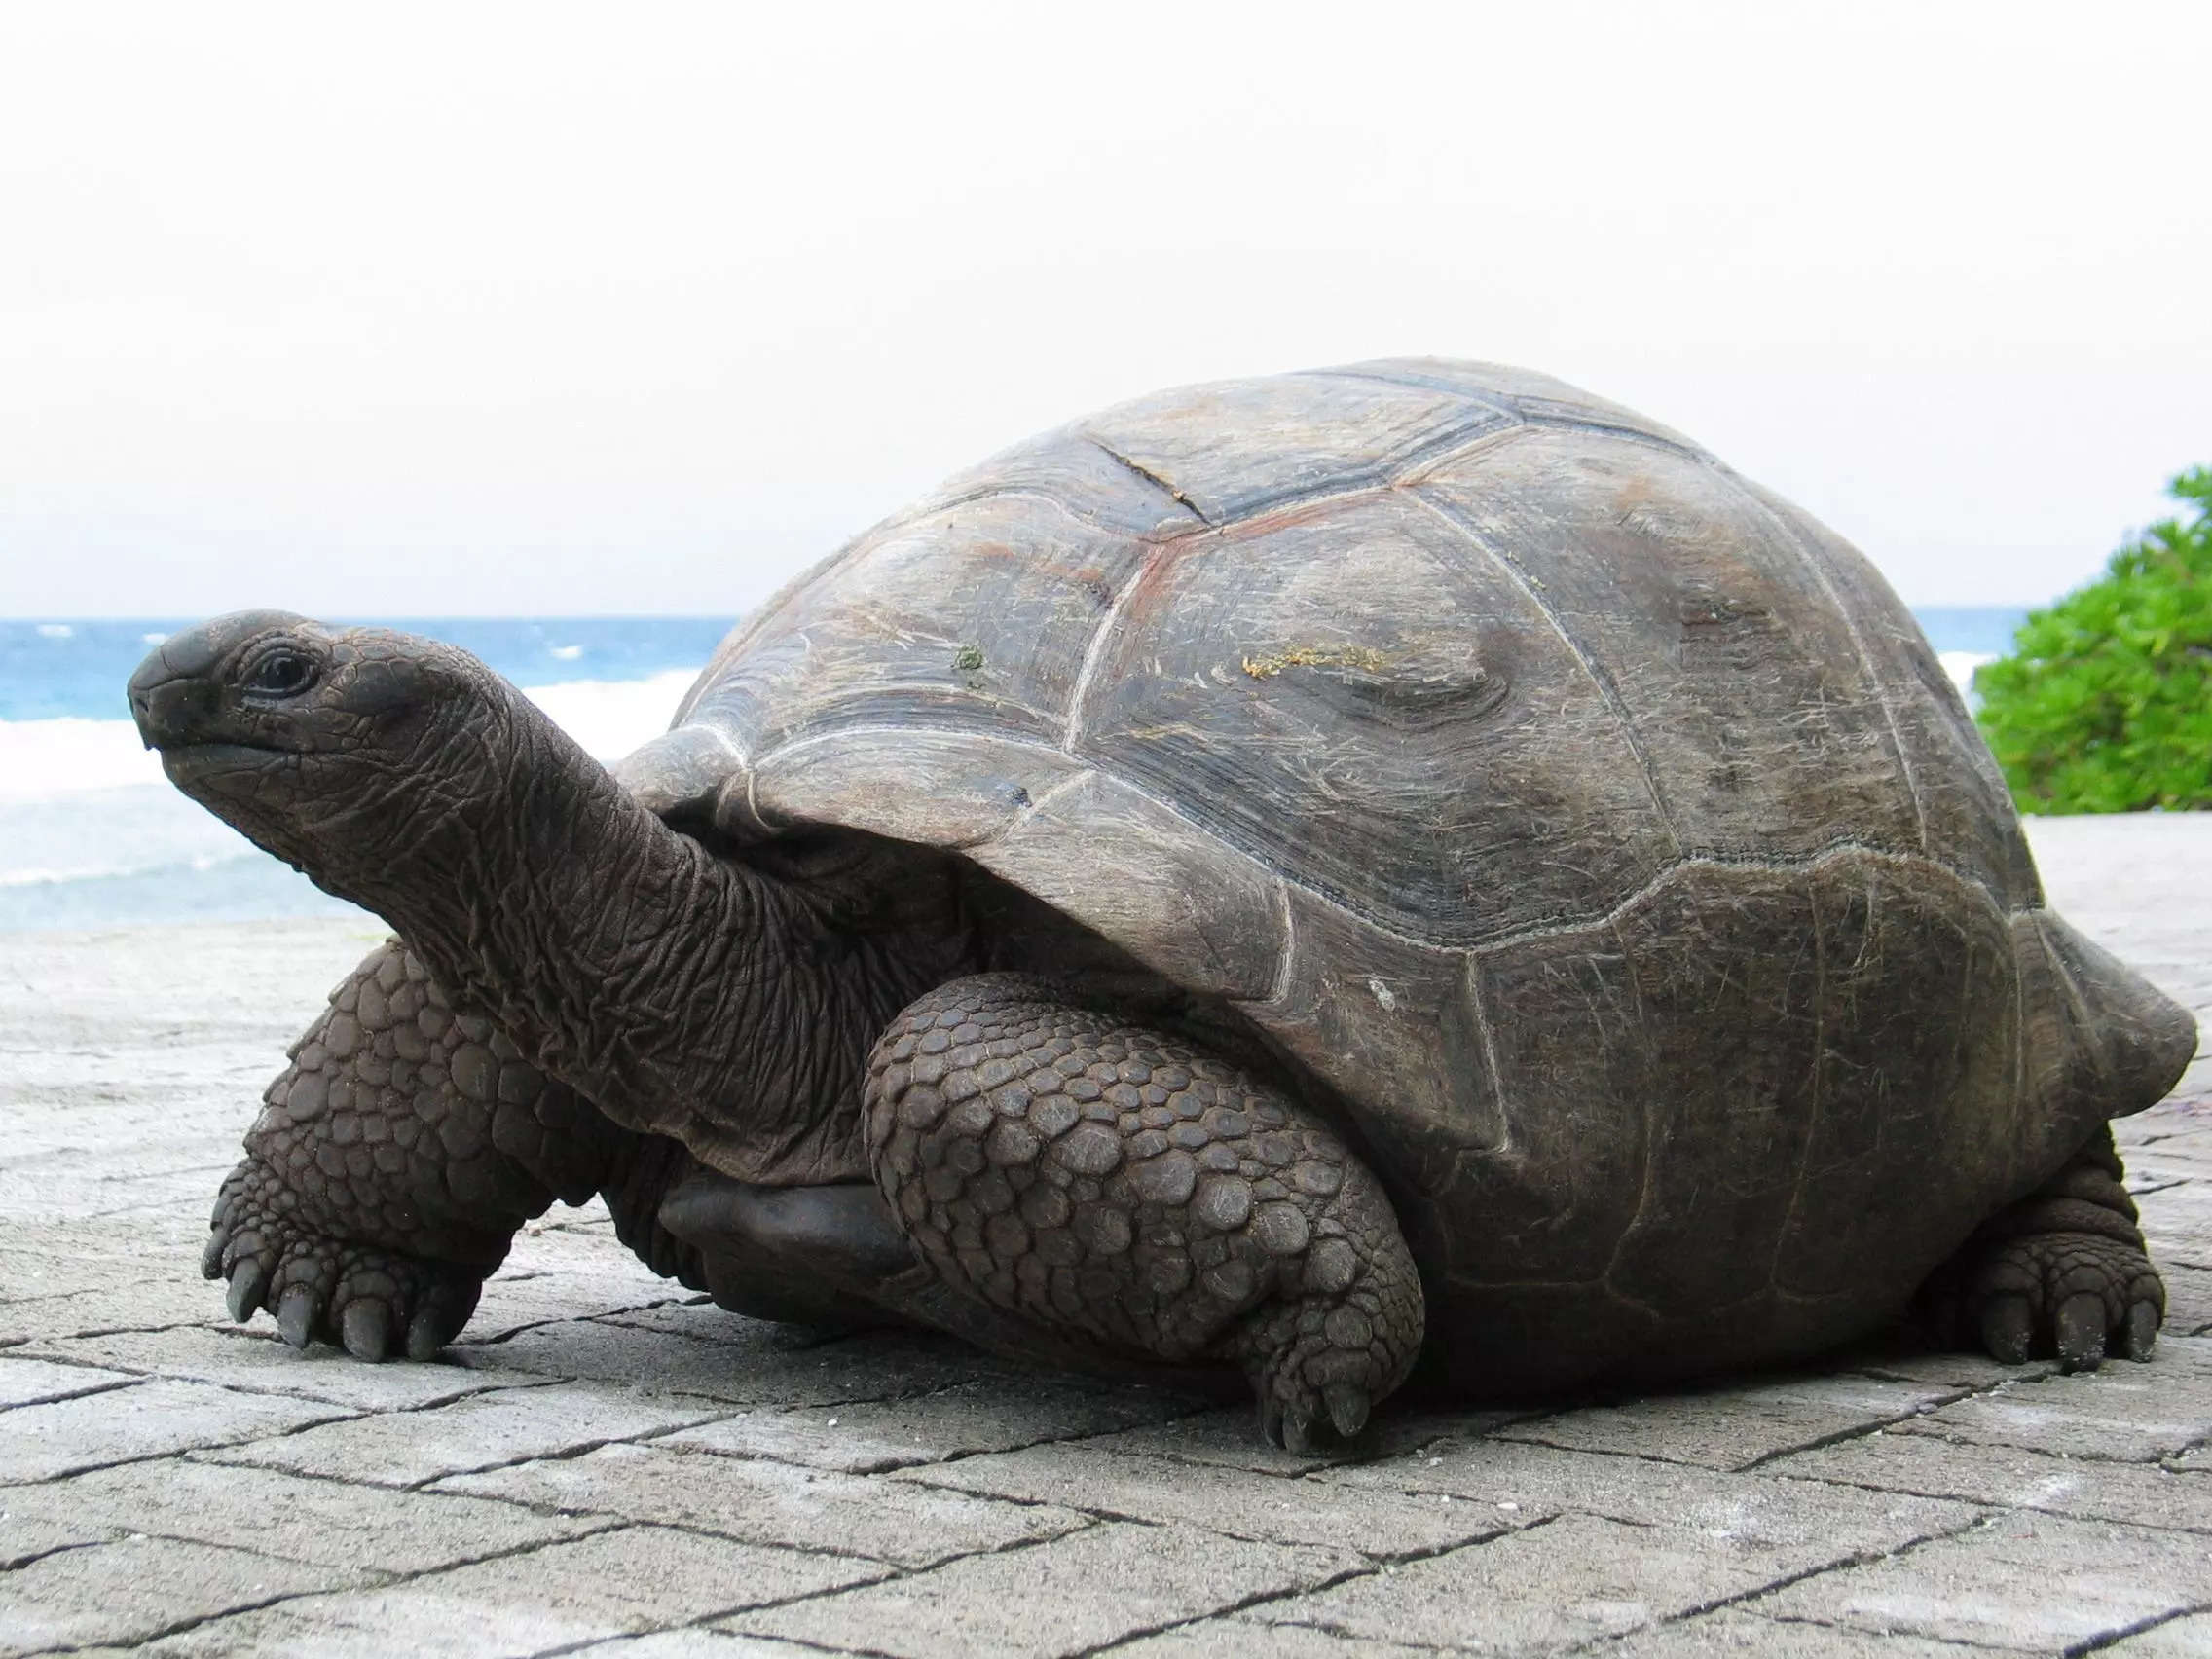 Купить большую картинку. Гигантская черепаха Альдабра. Дермохелис черепаха. Галапагосская черепаха. Галапагосская гигантская черепаха.